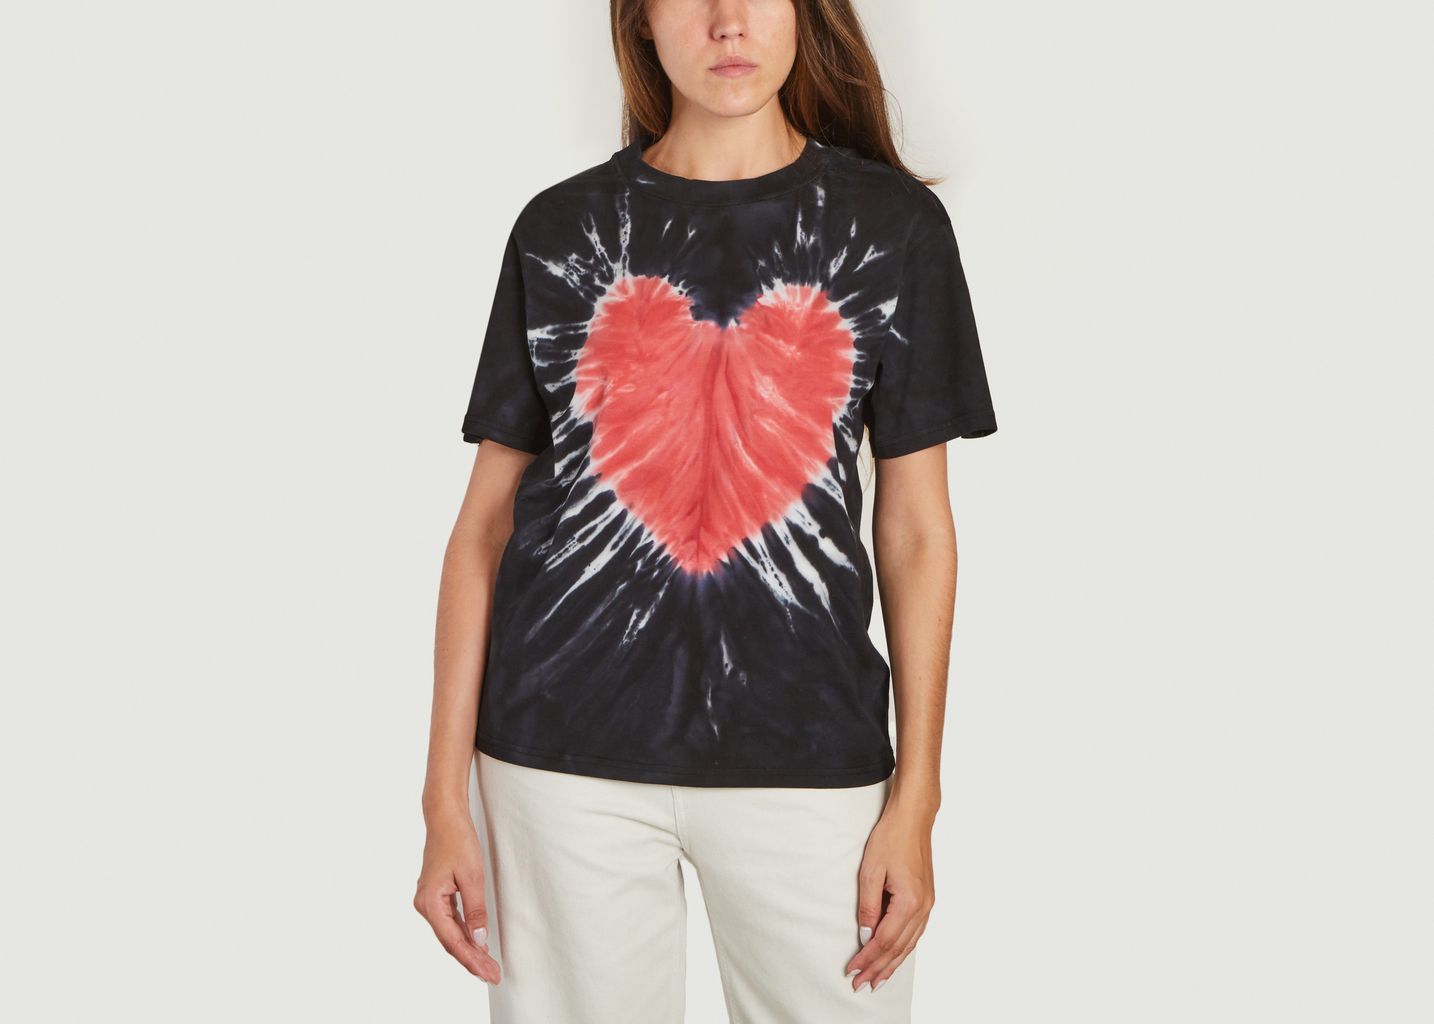 Carne Bollente Heart Attract T-shirt